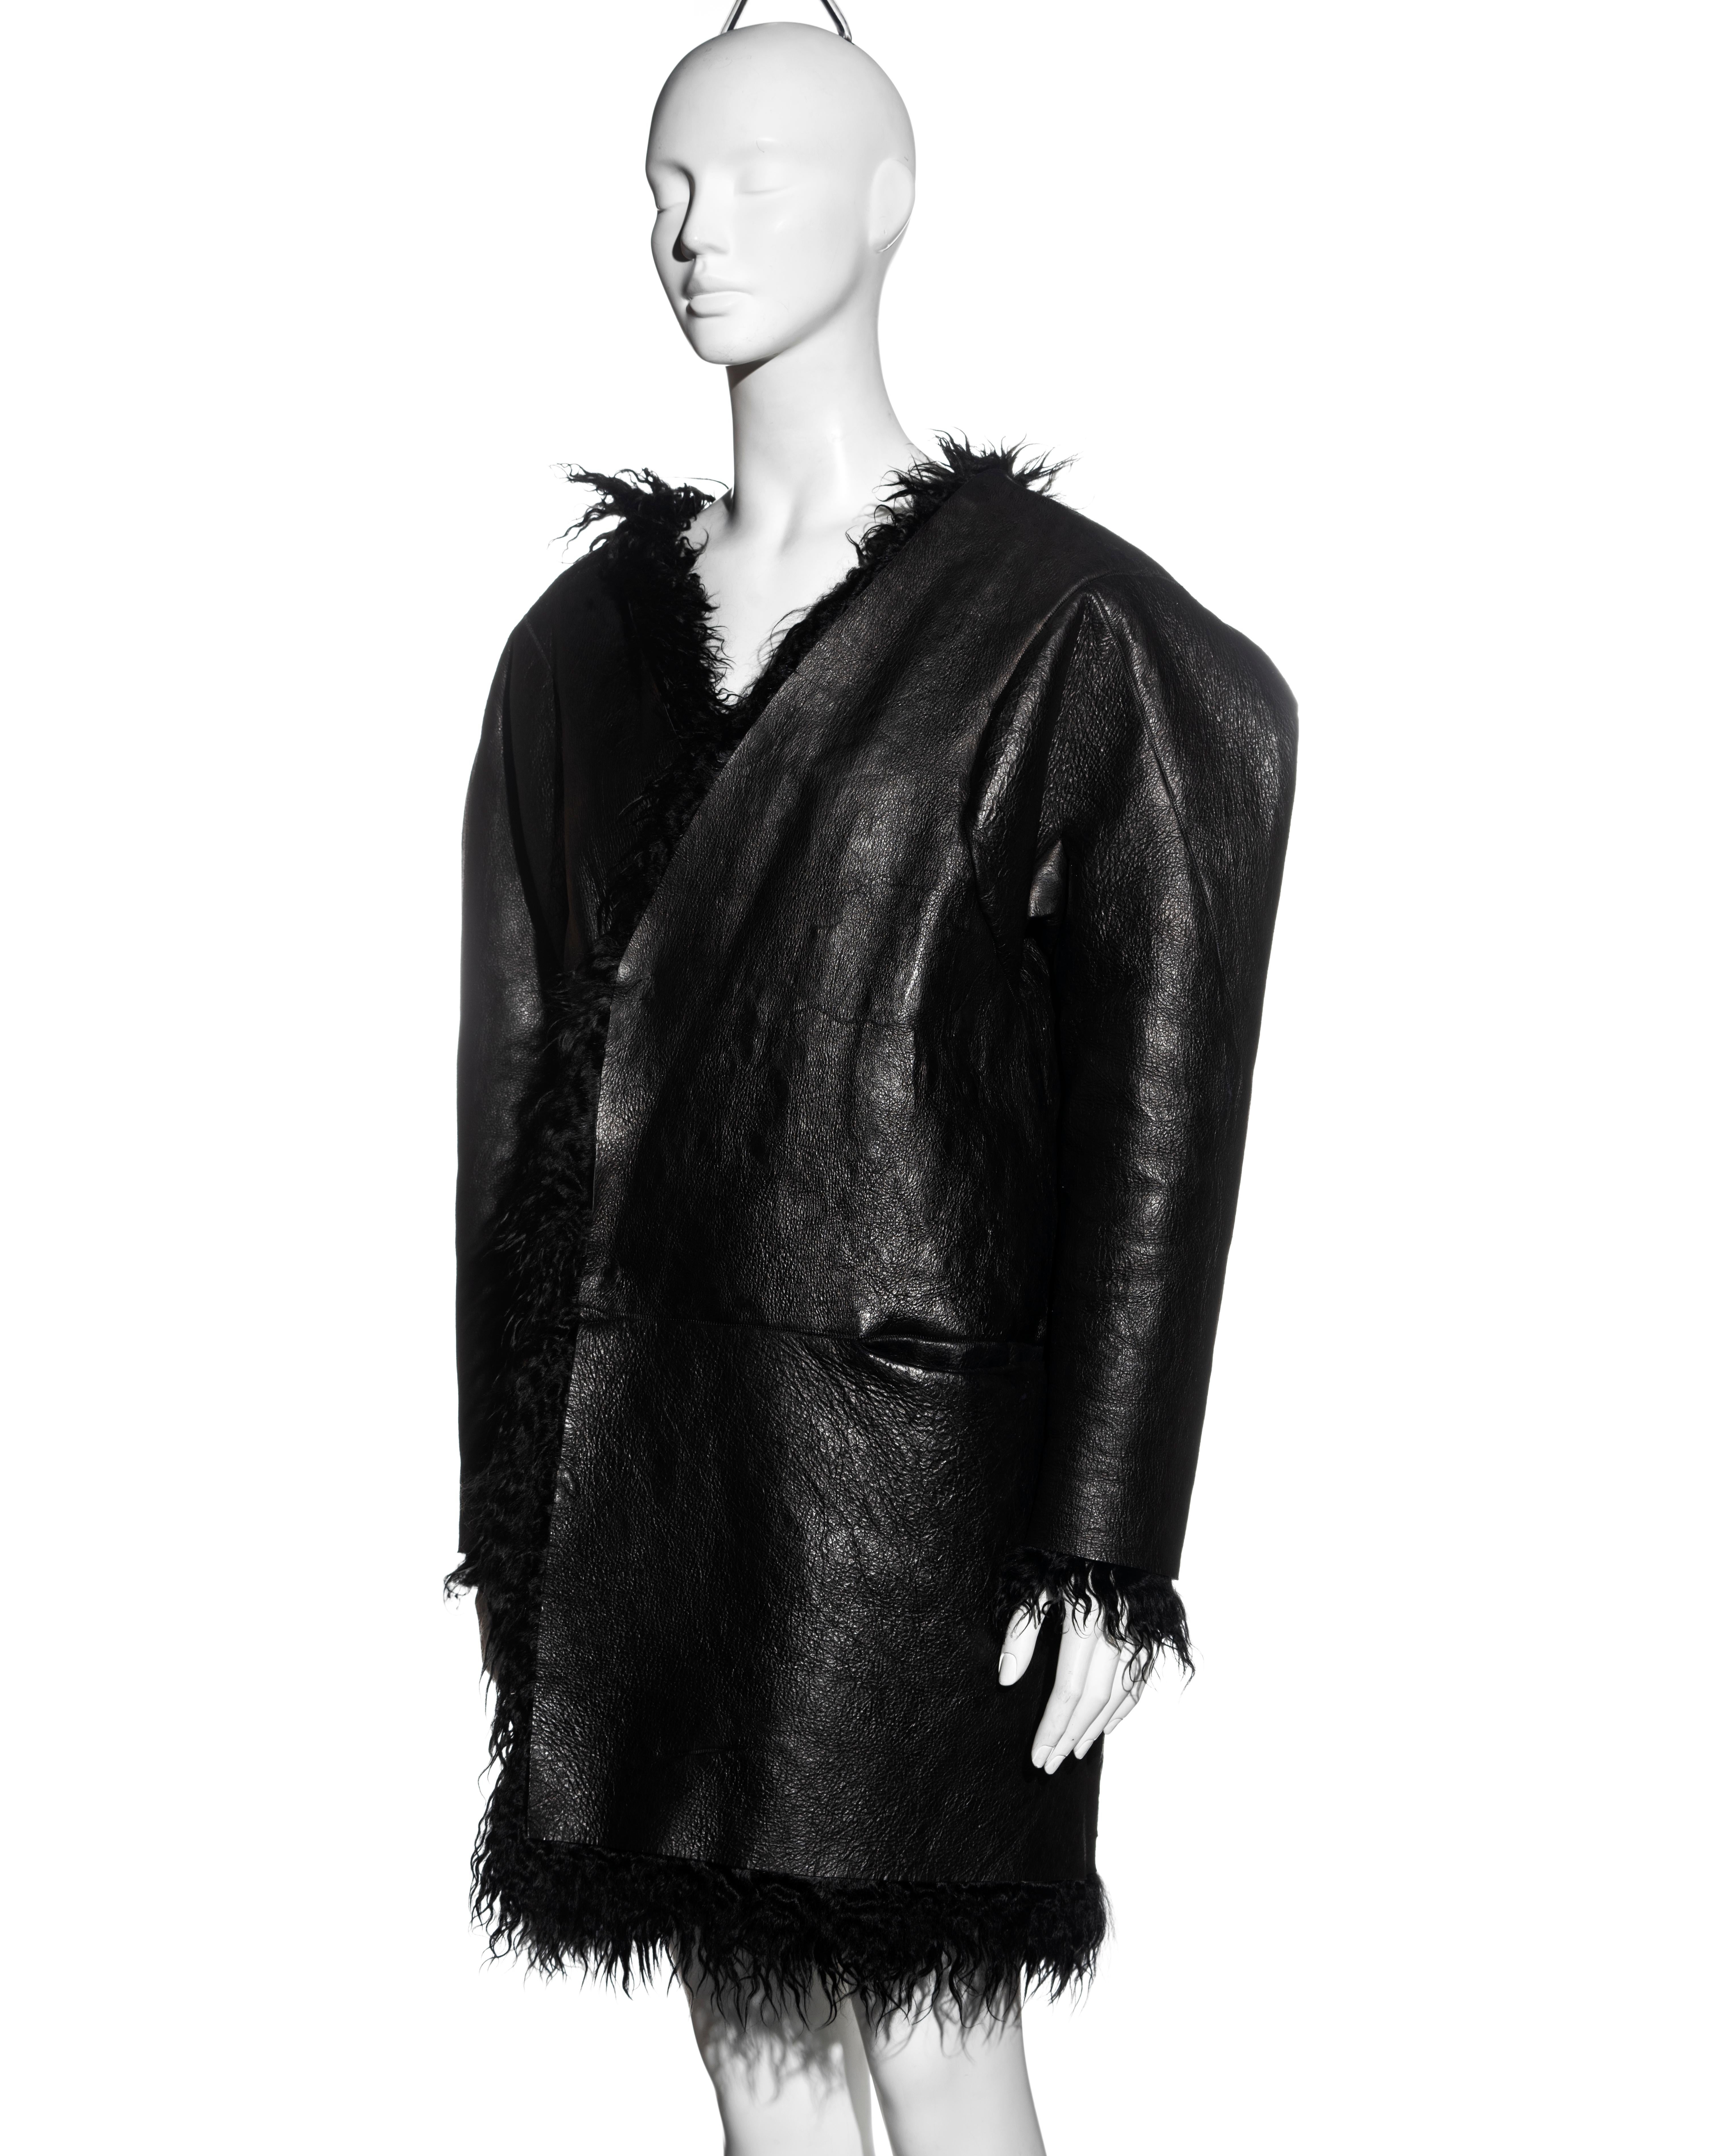 Martin Margiela manteau réversible en peau de chèvre noire « collection flat », automne-hiver 1998 en vente 1